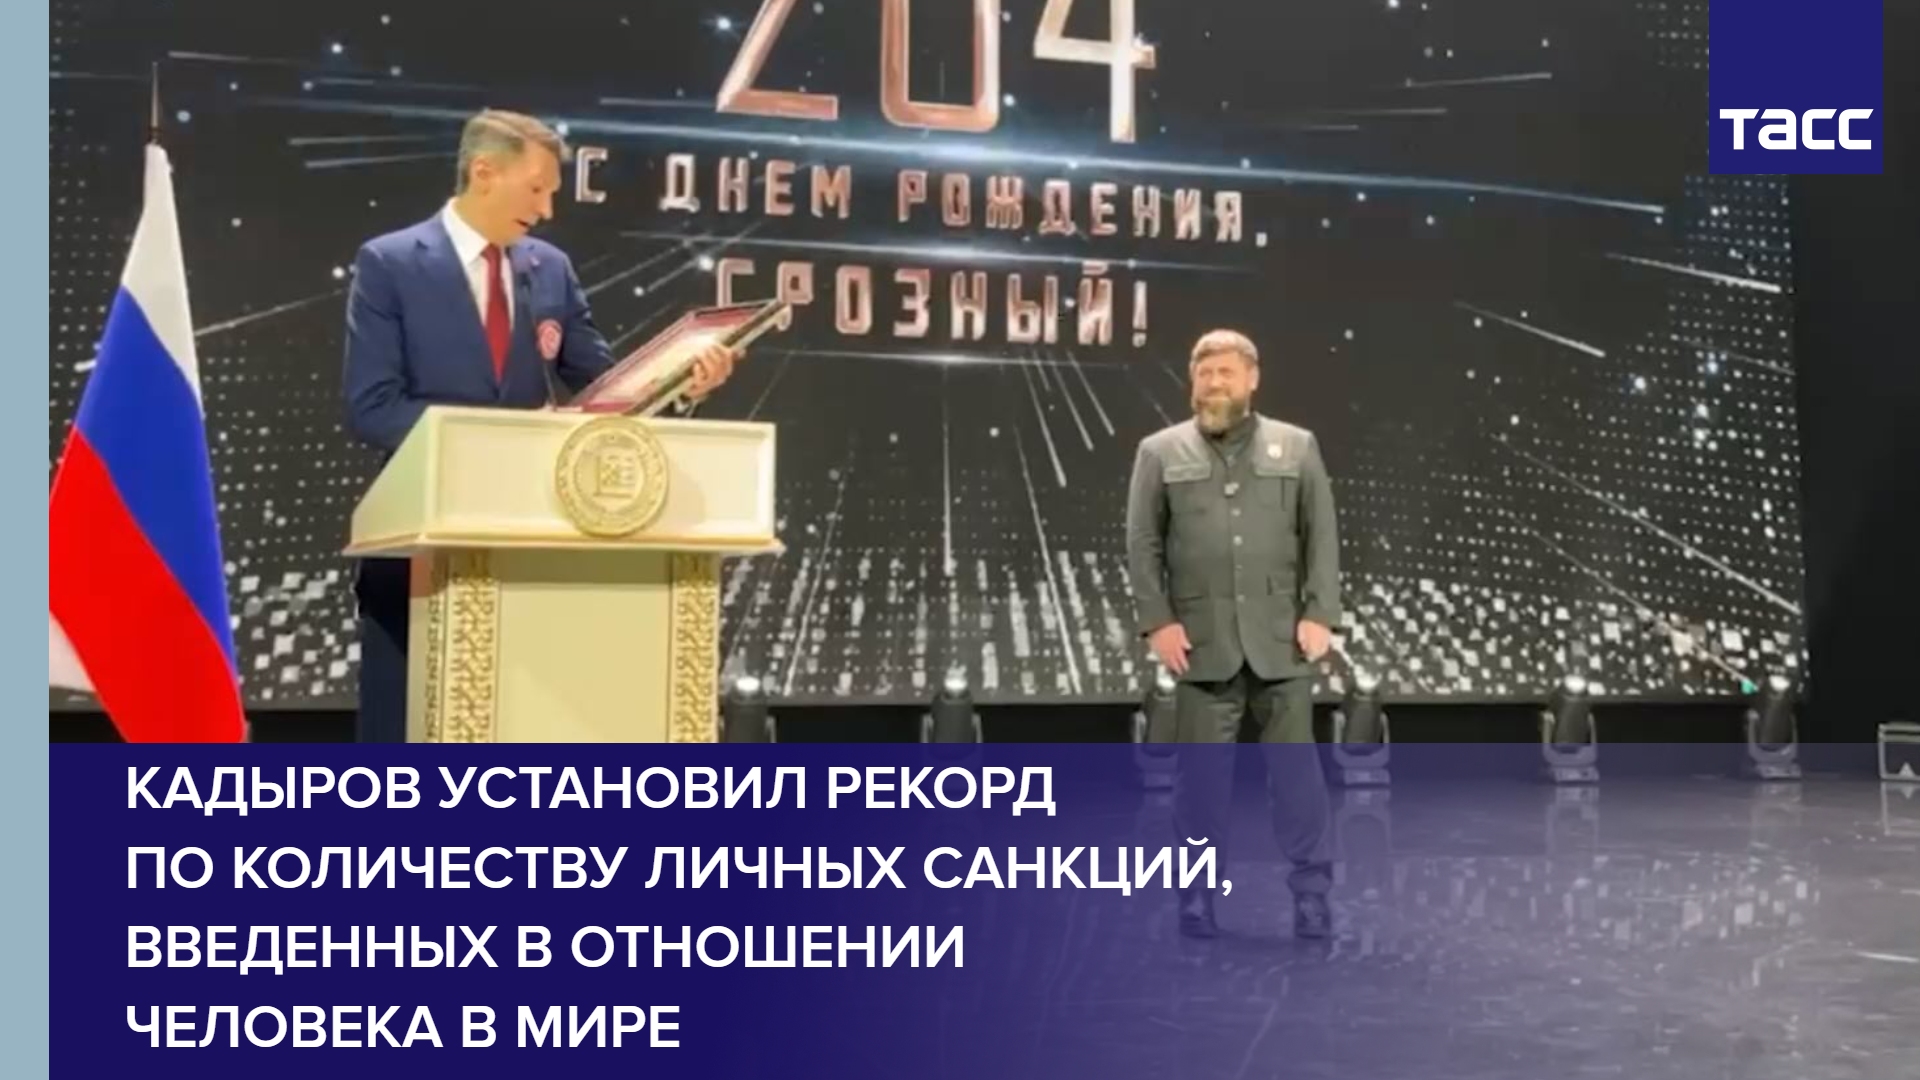 Кадыров установил рекорд по количеству личных санкций, введенных в отношении человека в мире #shorts